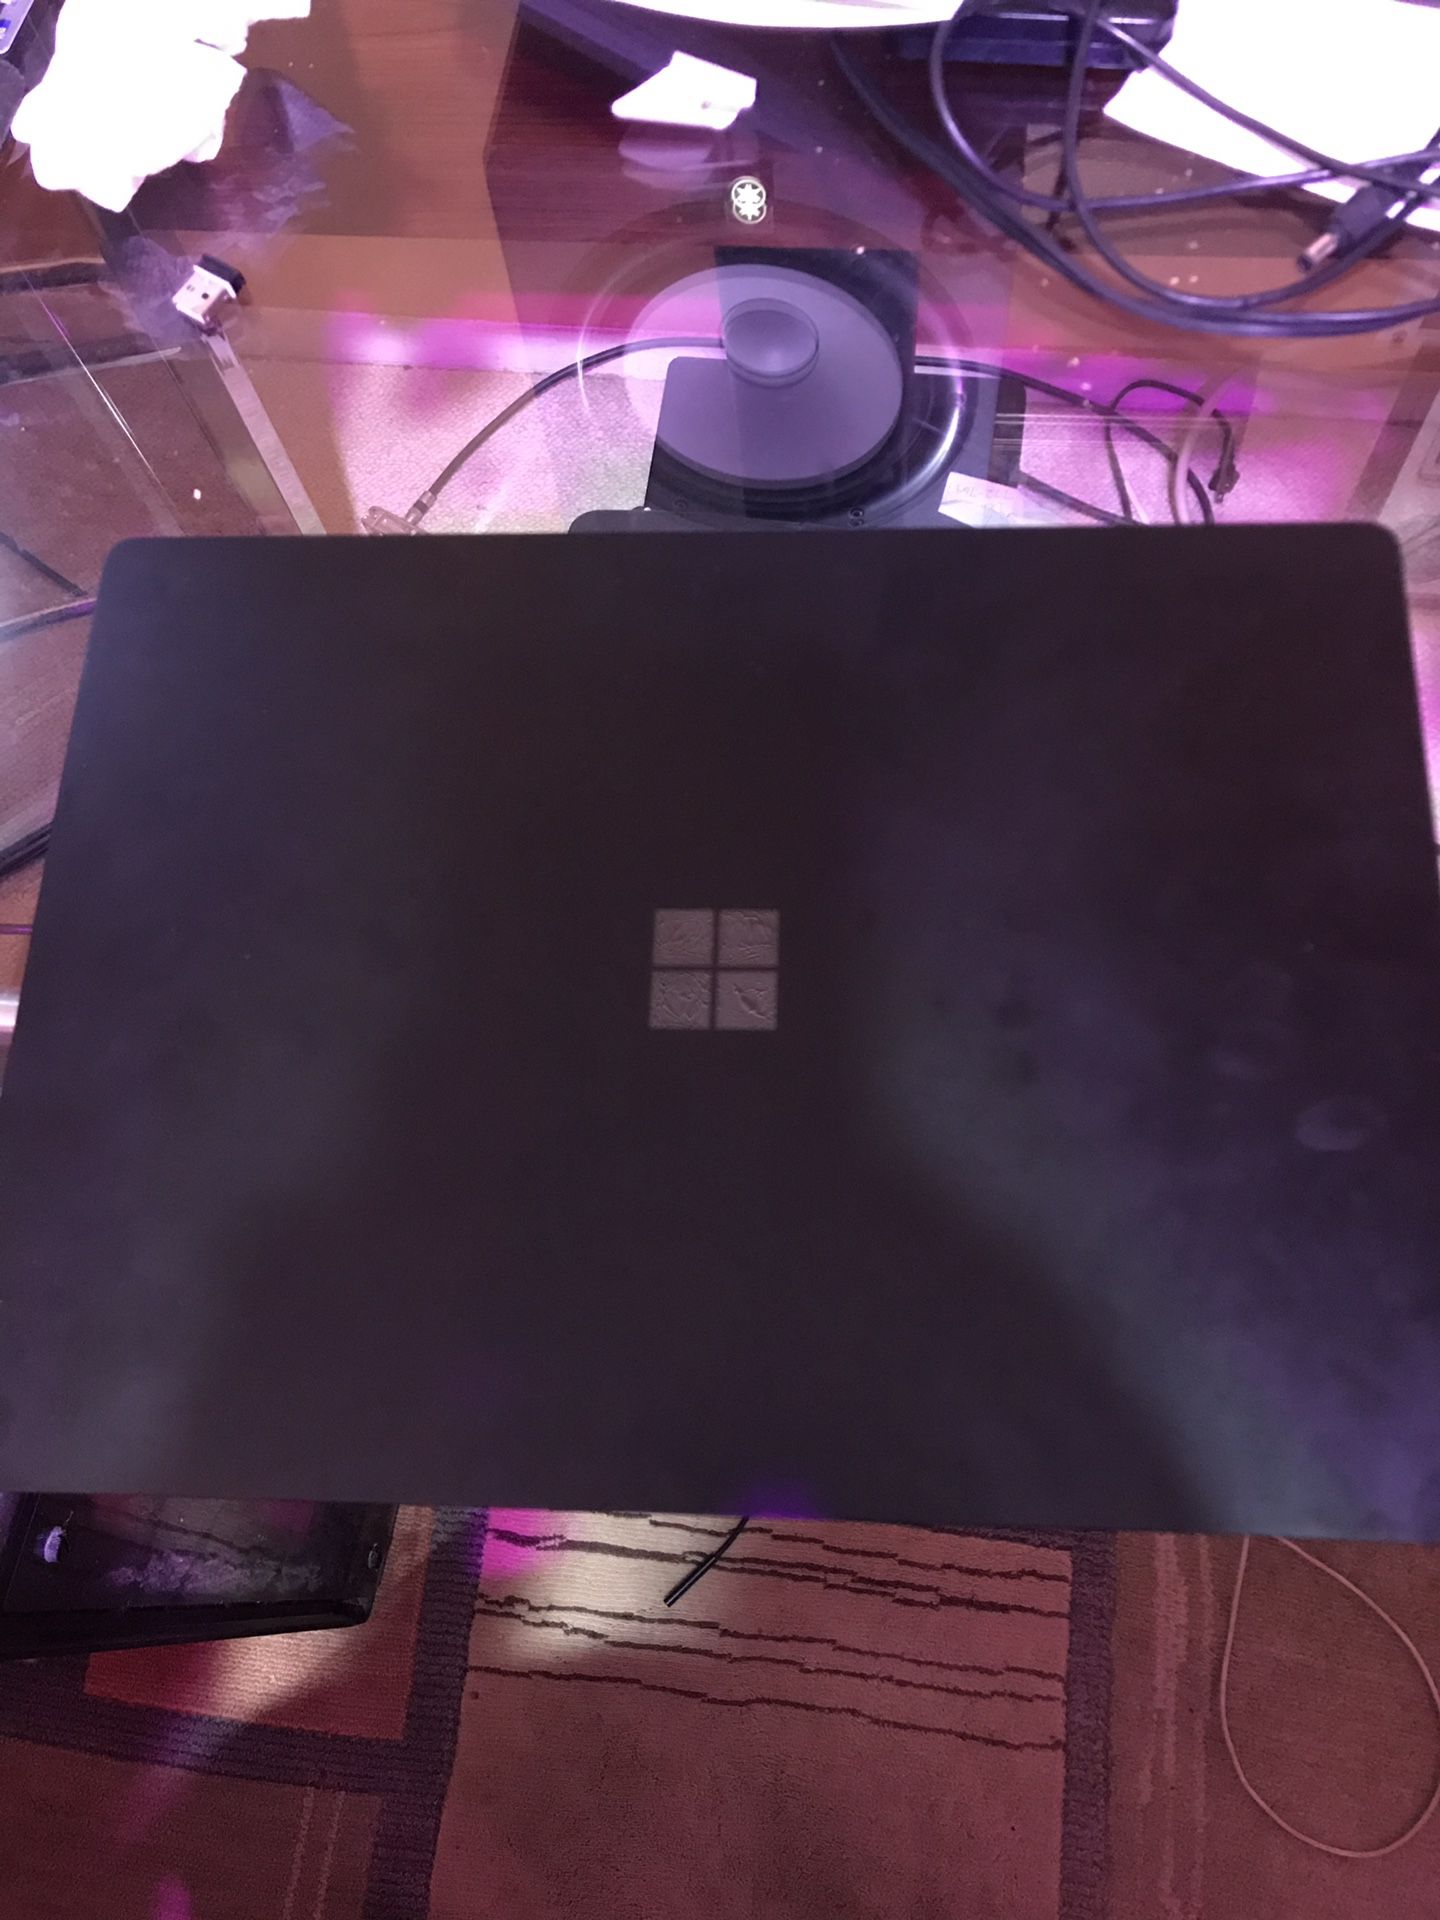 Surface Laptop 3 Black